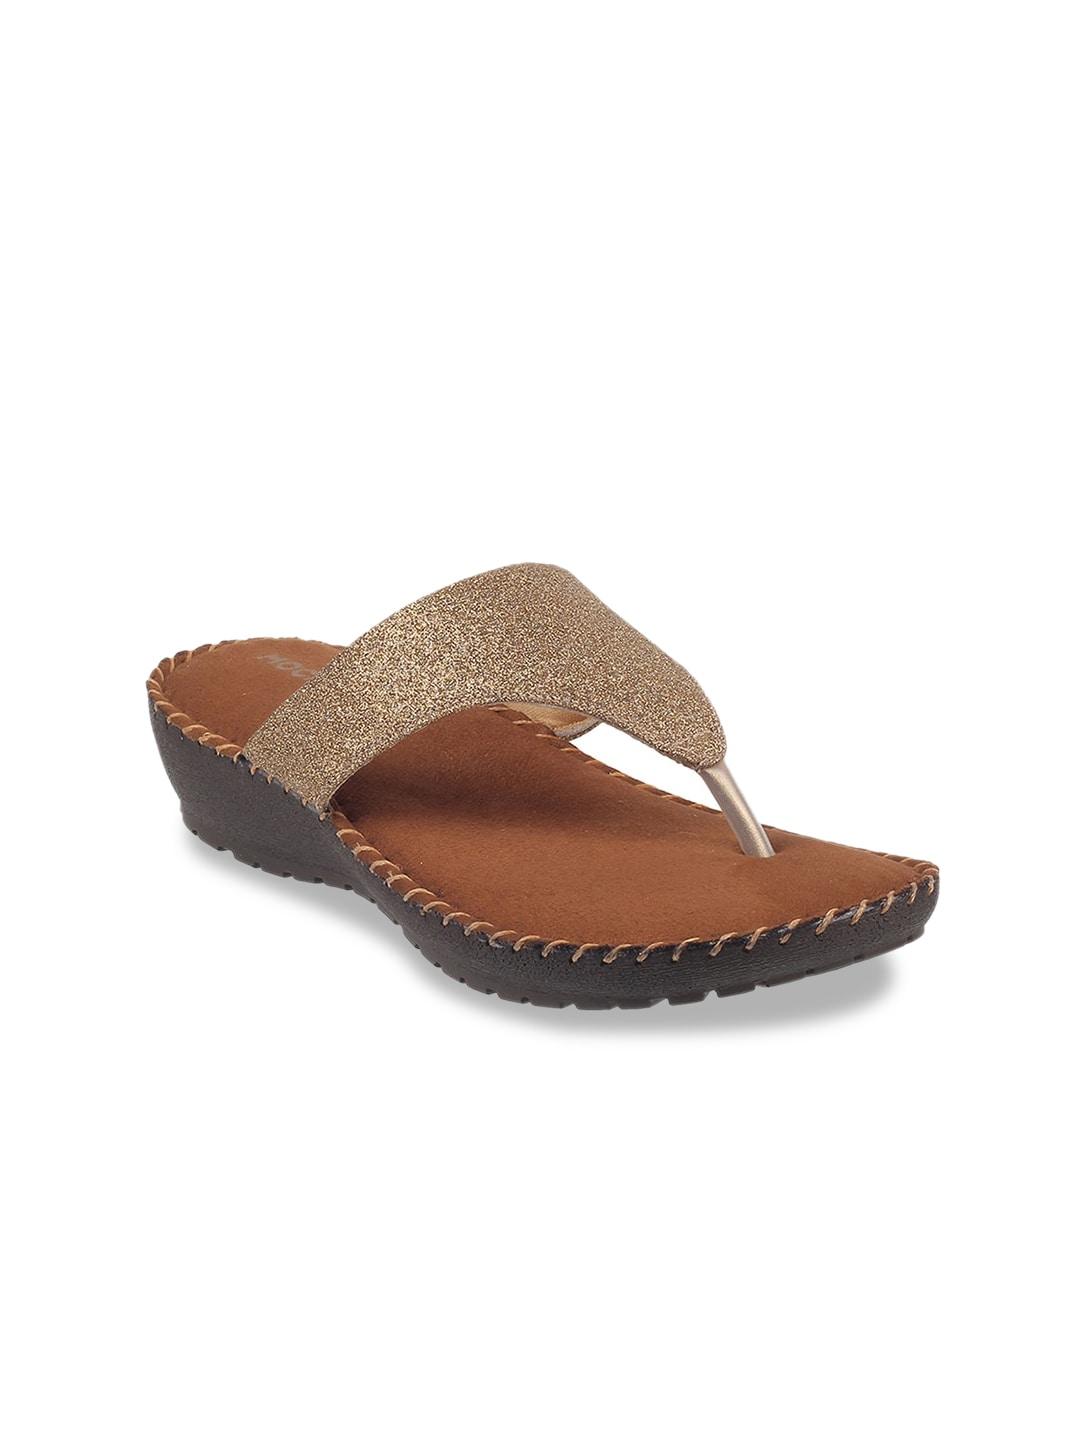 mochi-gold-toned-&-tan-embellished-wedge-sandals